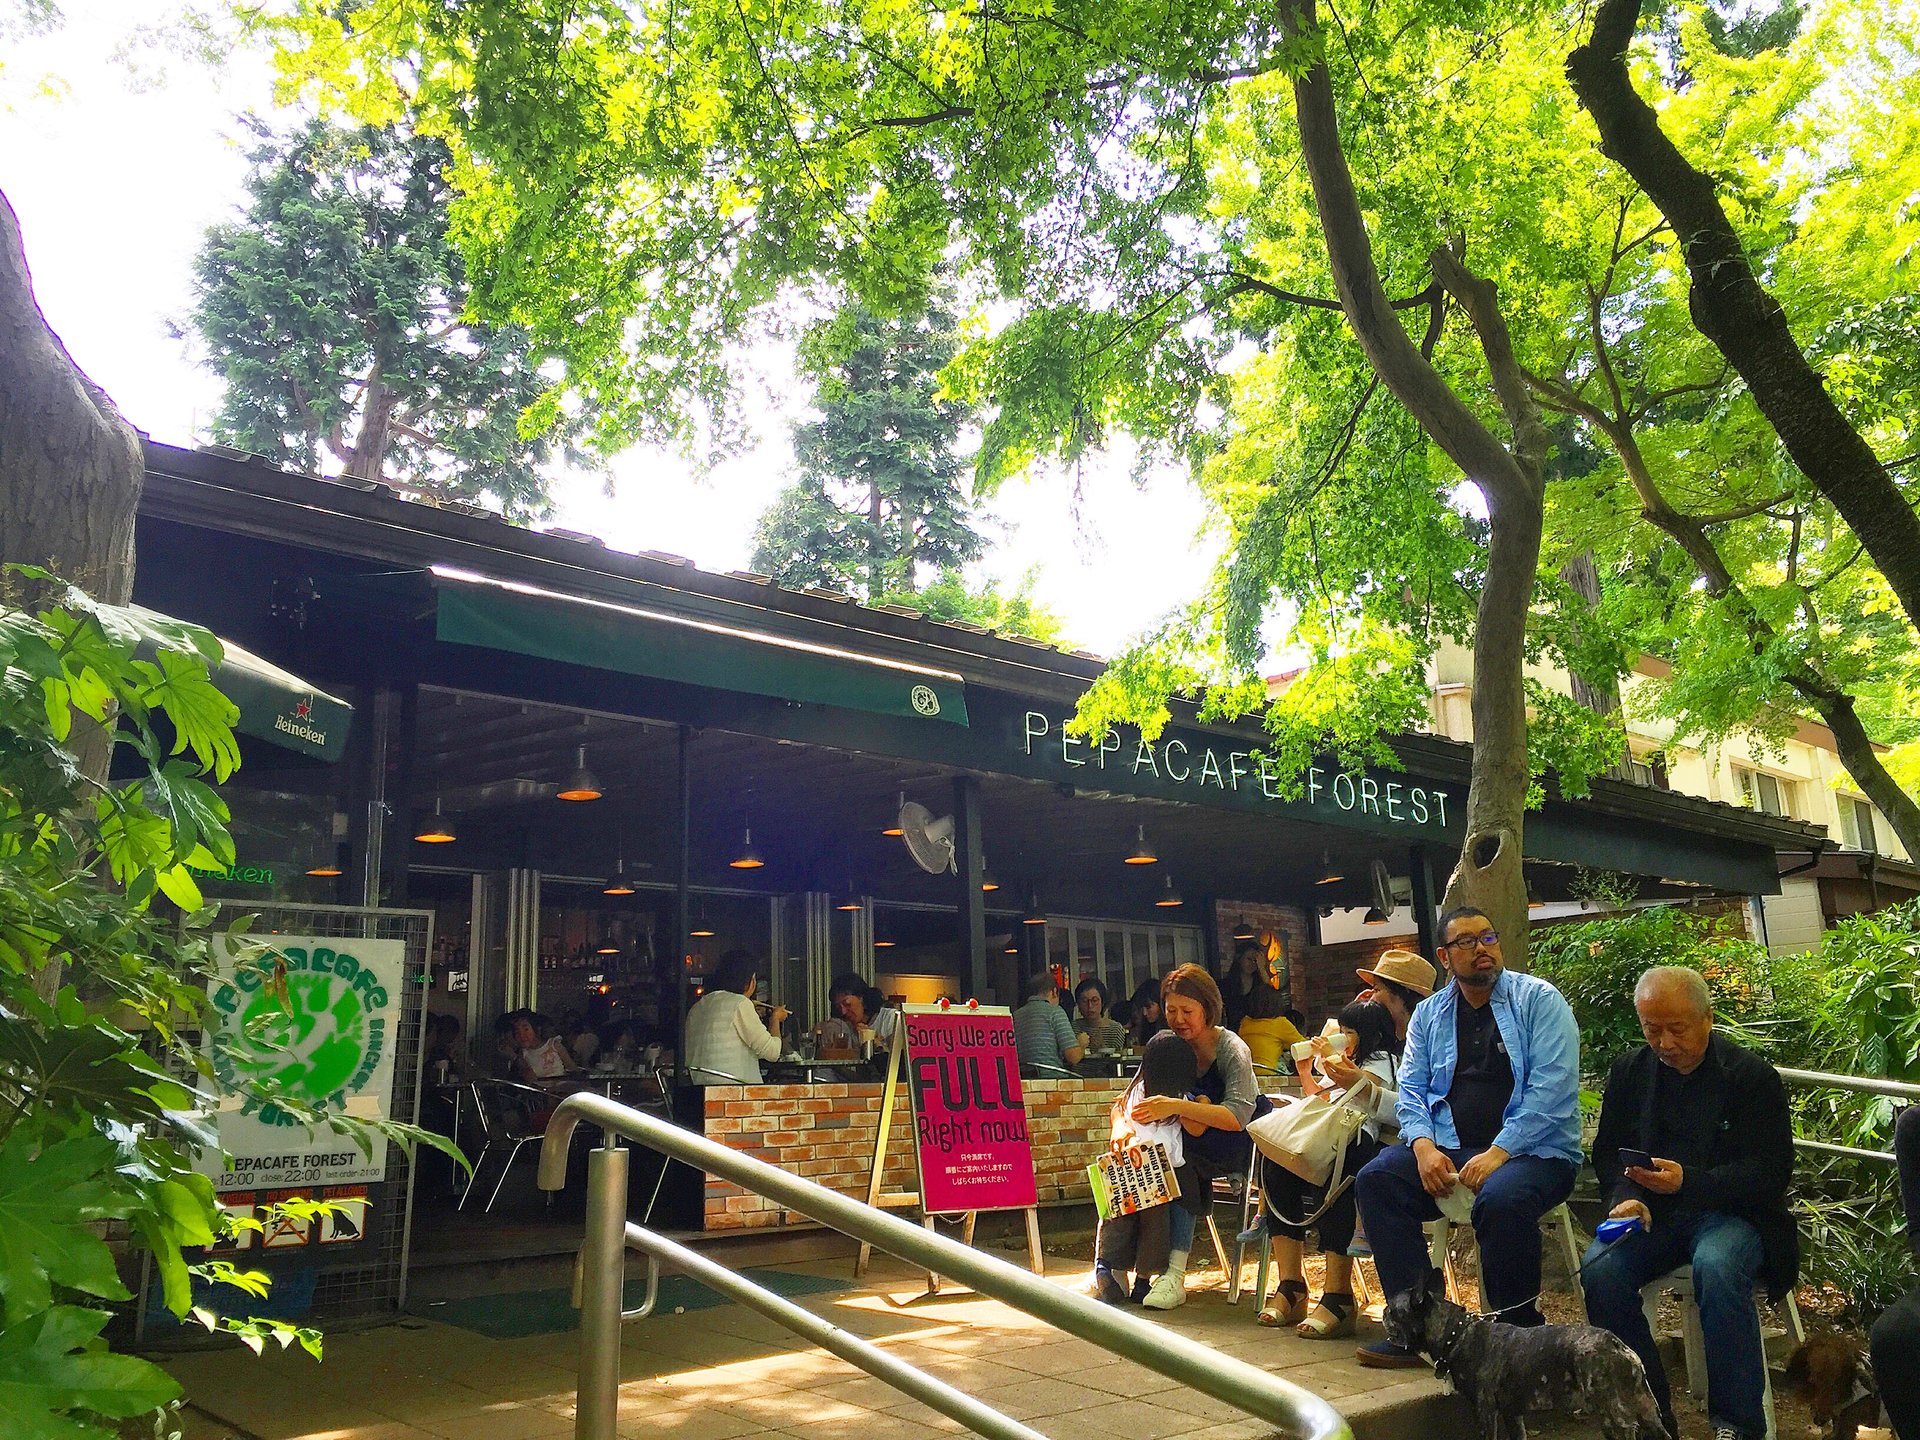 【吉祥寺】大自然の中でいただく絶品タイ料理ランチ。井の頭公園内に佇むペパカフェフォレストが最高。